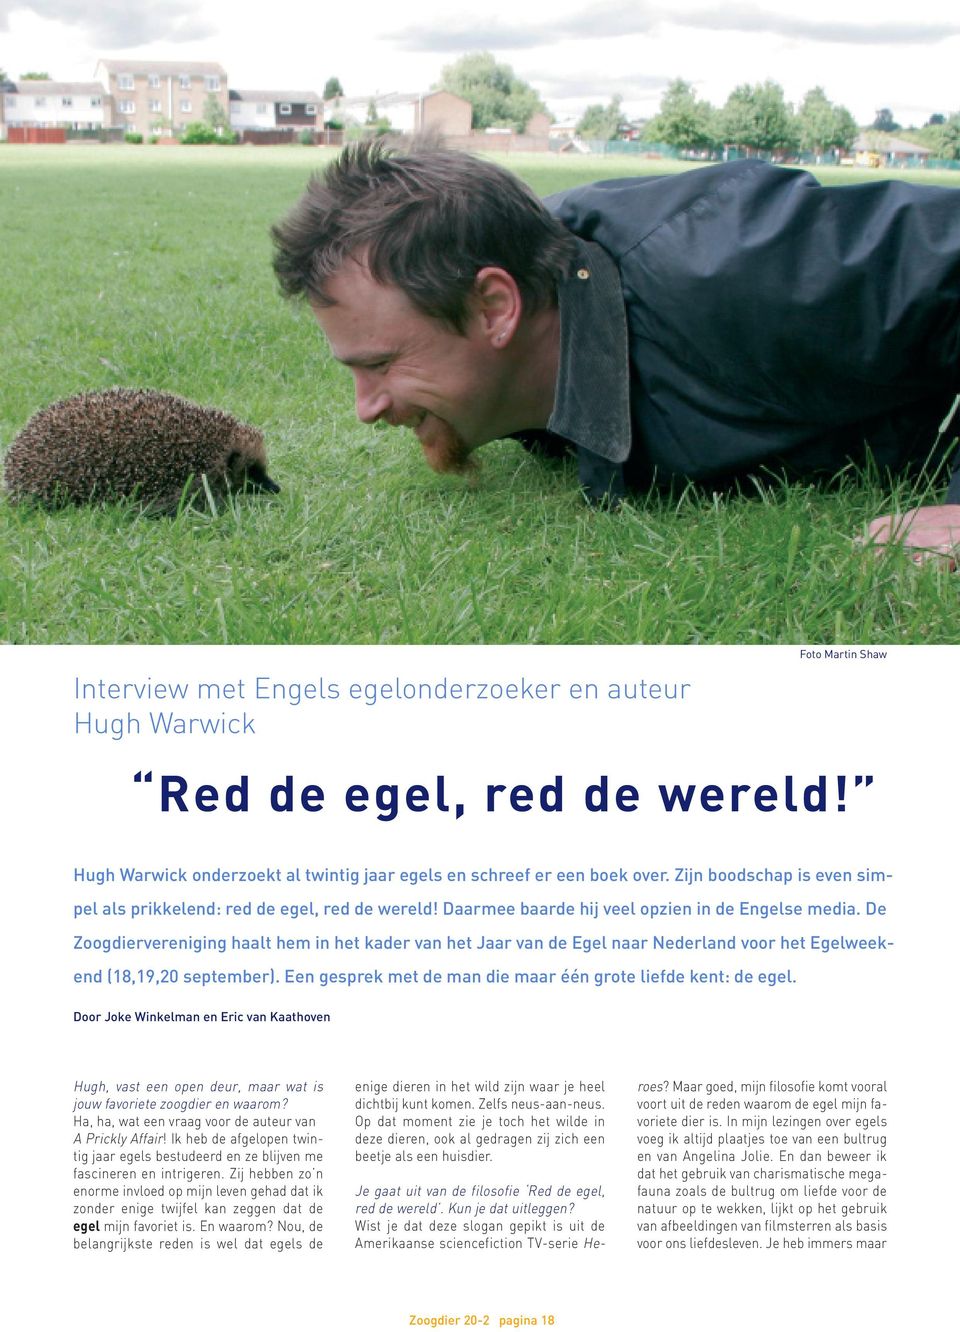 De Zoogdiervereniging haalt hem in het kader van het Jaar van de Egel naar Nederland voor het Egelweekend (18,19,20 september). Een gesprek met de man die maar één grote liefde kent: de egel.